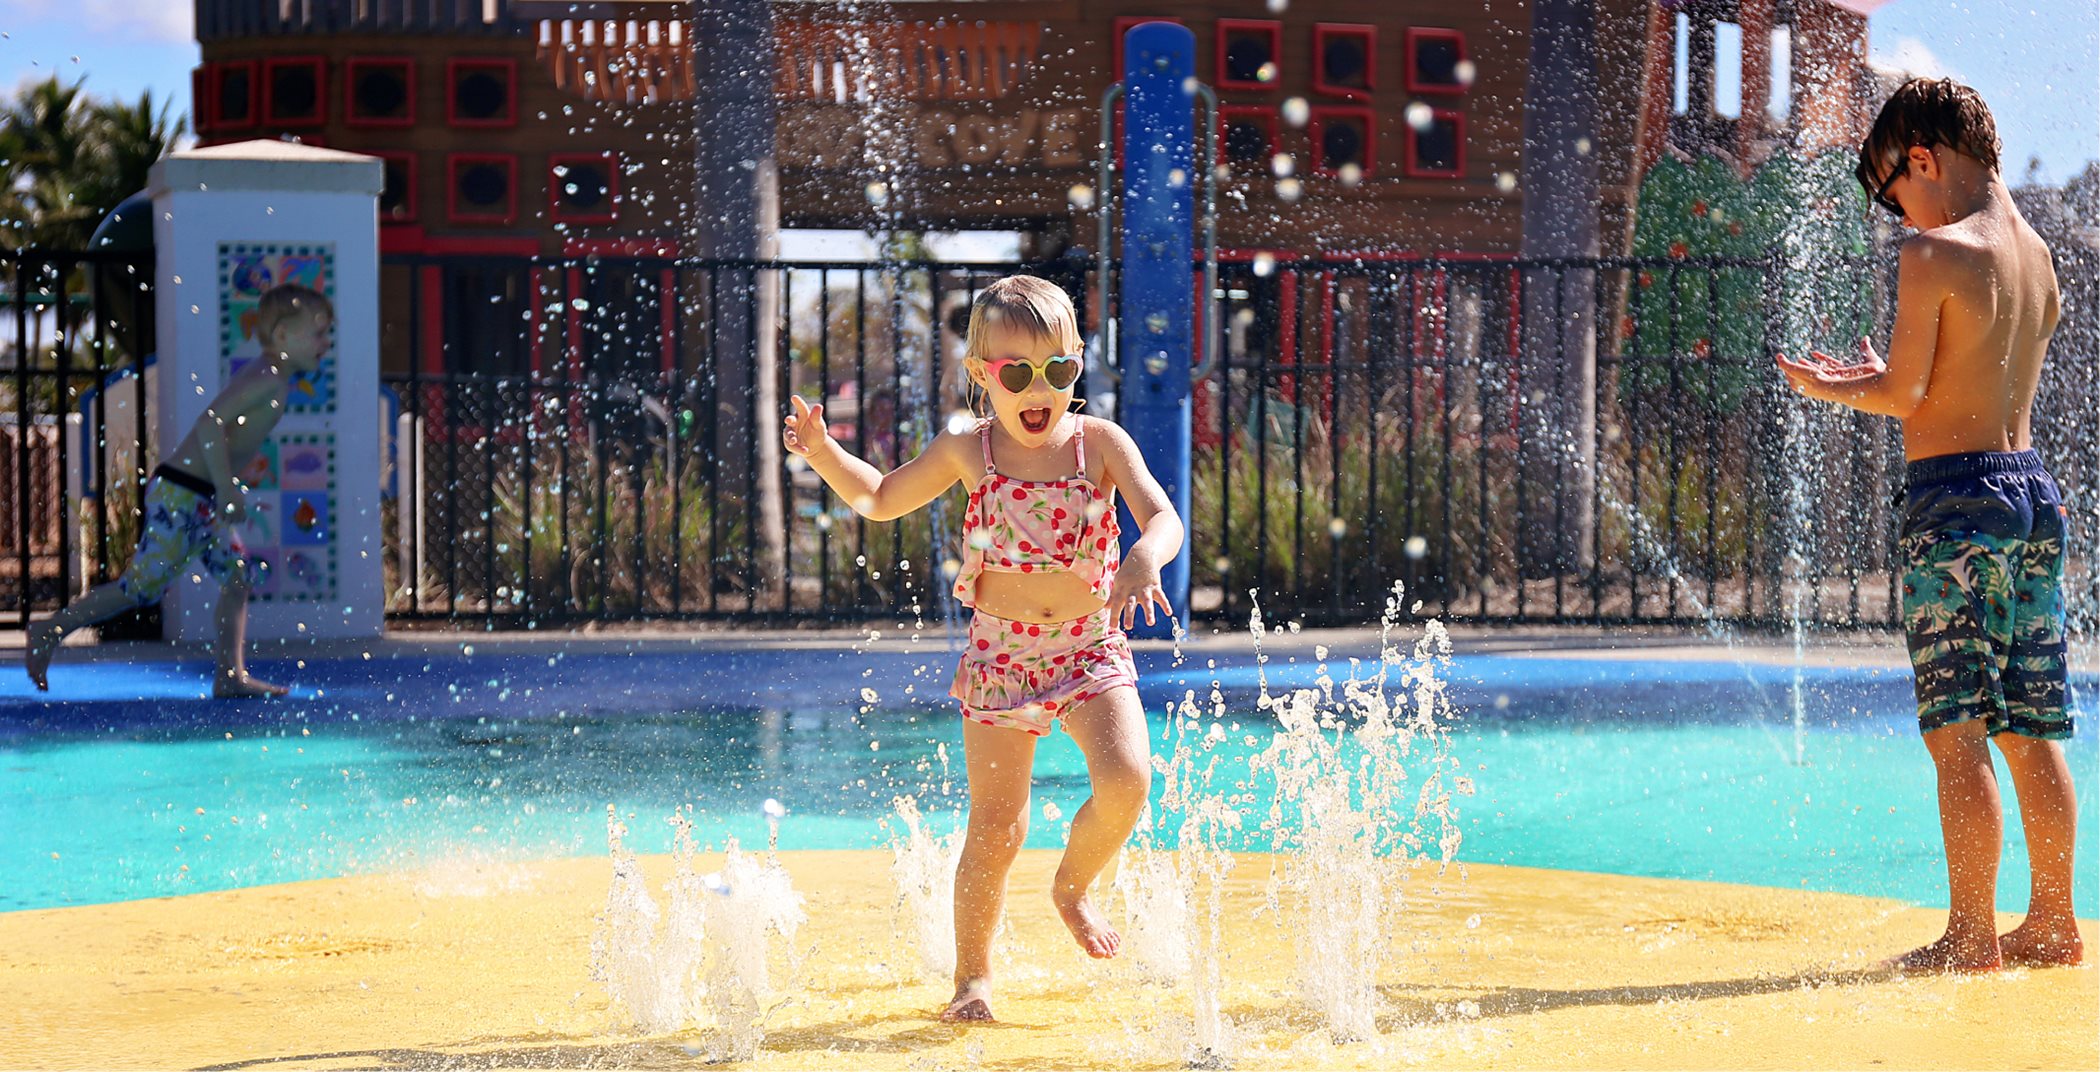 Little girl playing in splash park